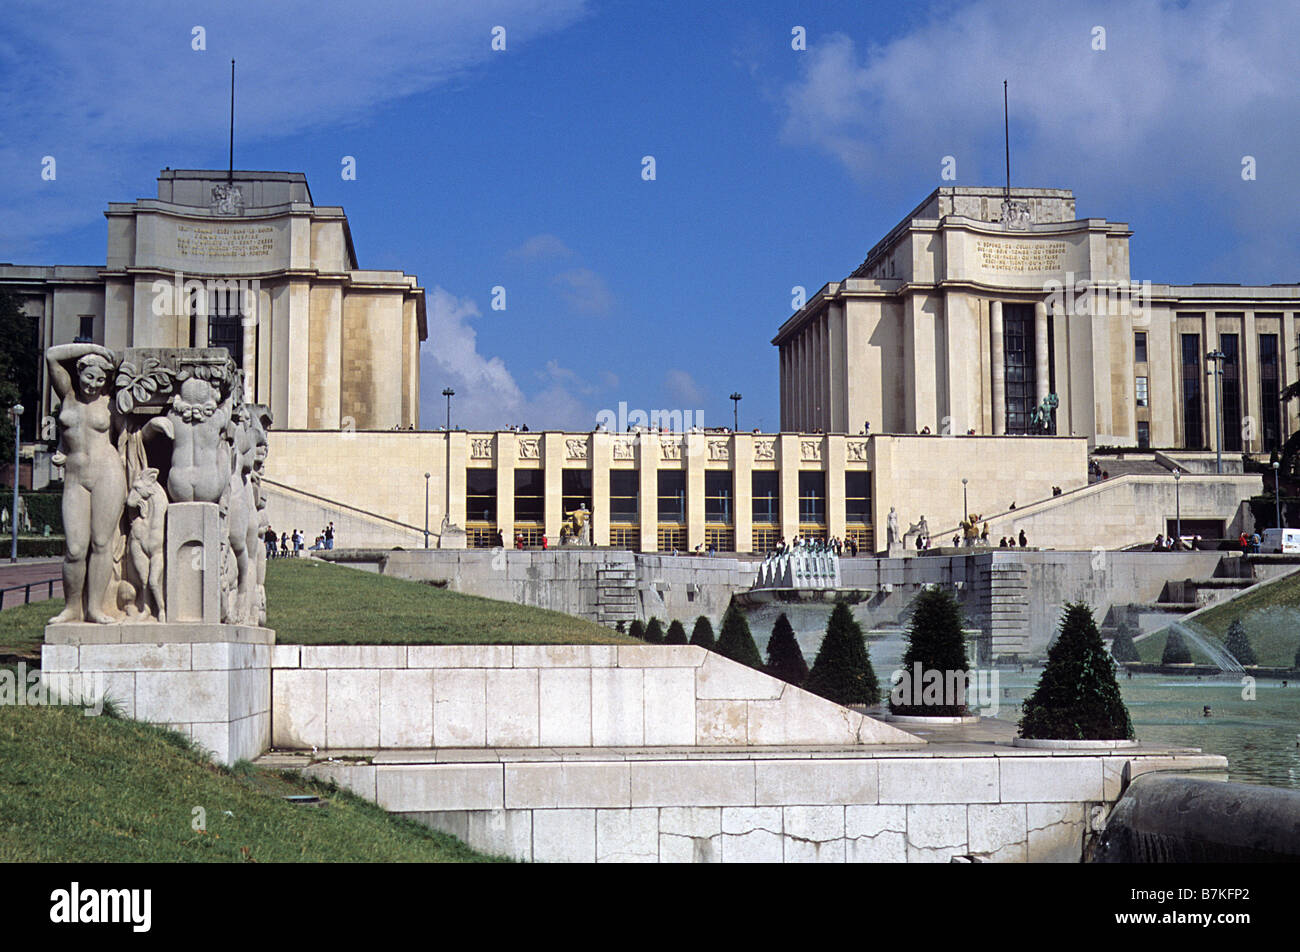 Paris, Palais de Chaillot, general view of central section. Stock Photo